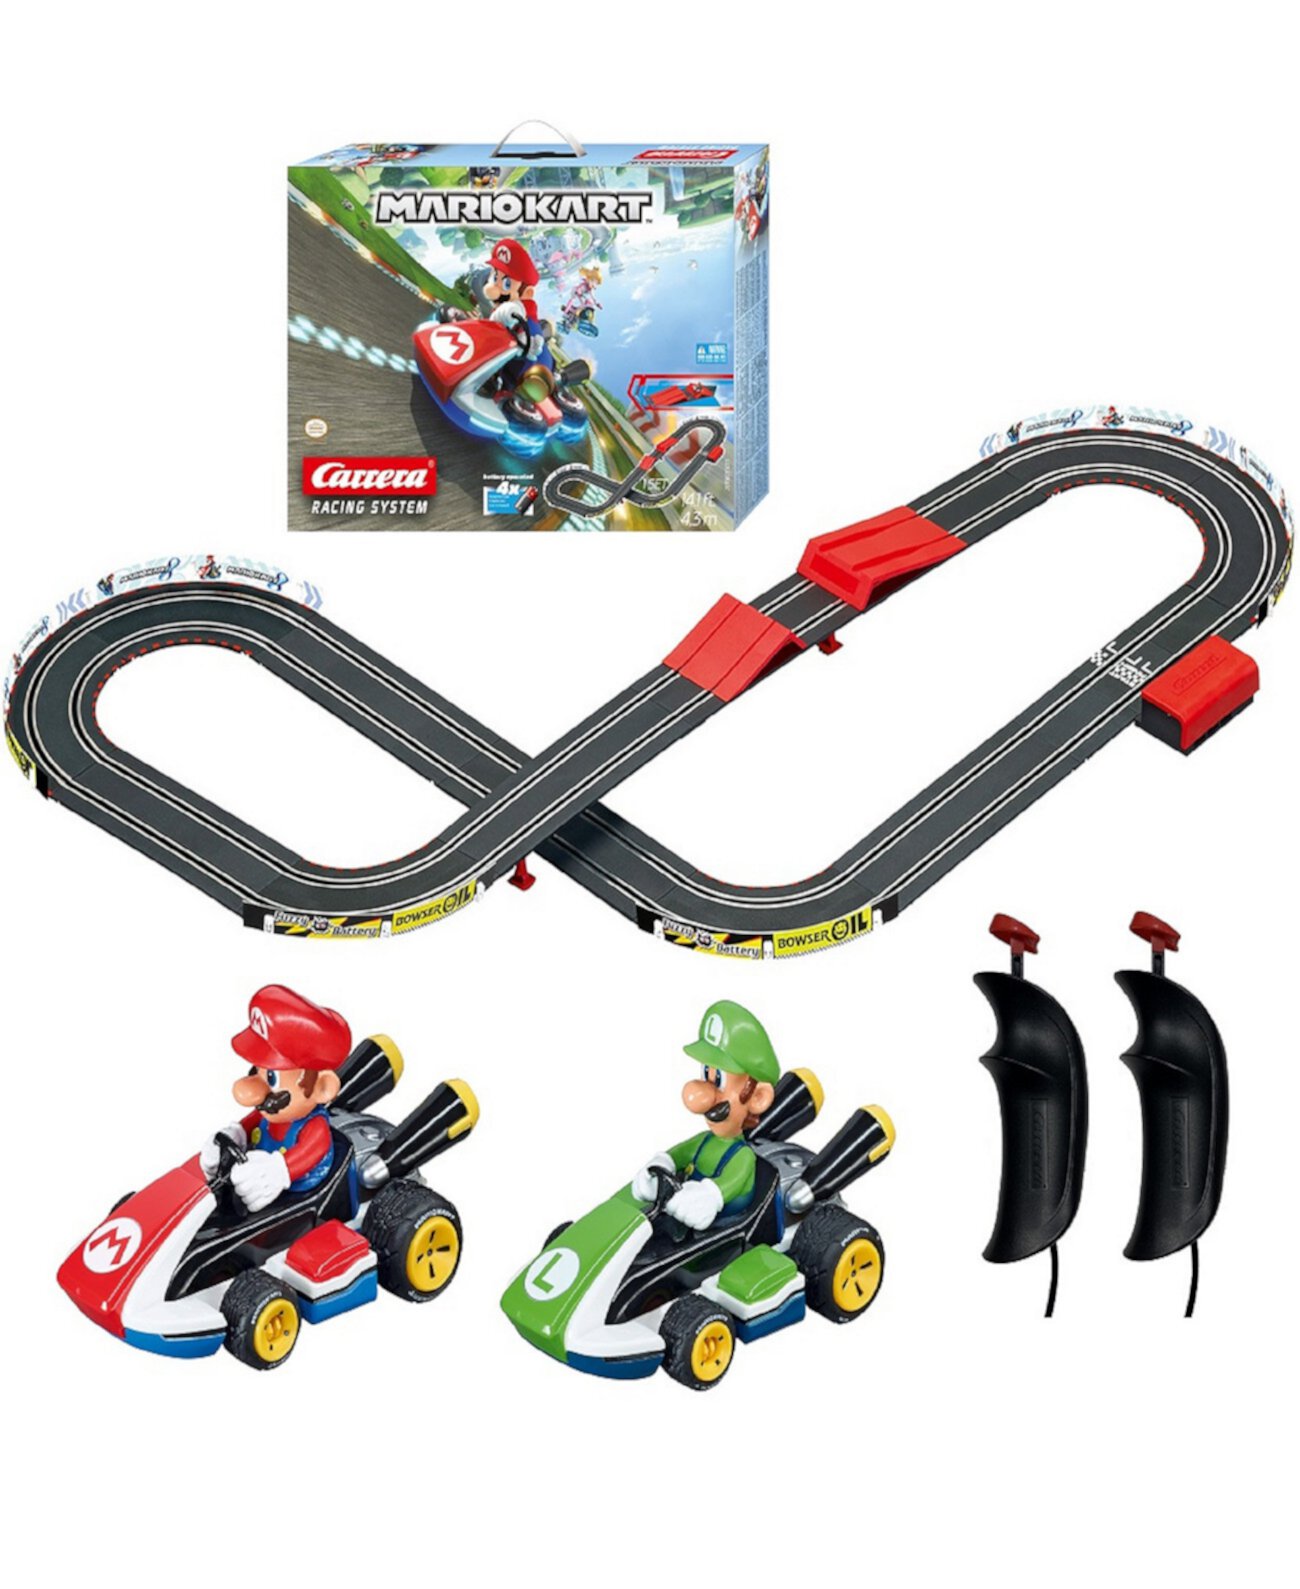 Гоночная трасса для игровых автоматов Go Mario Kart на батарейках с электрическим приводом и набором трамплинов Carrera